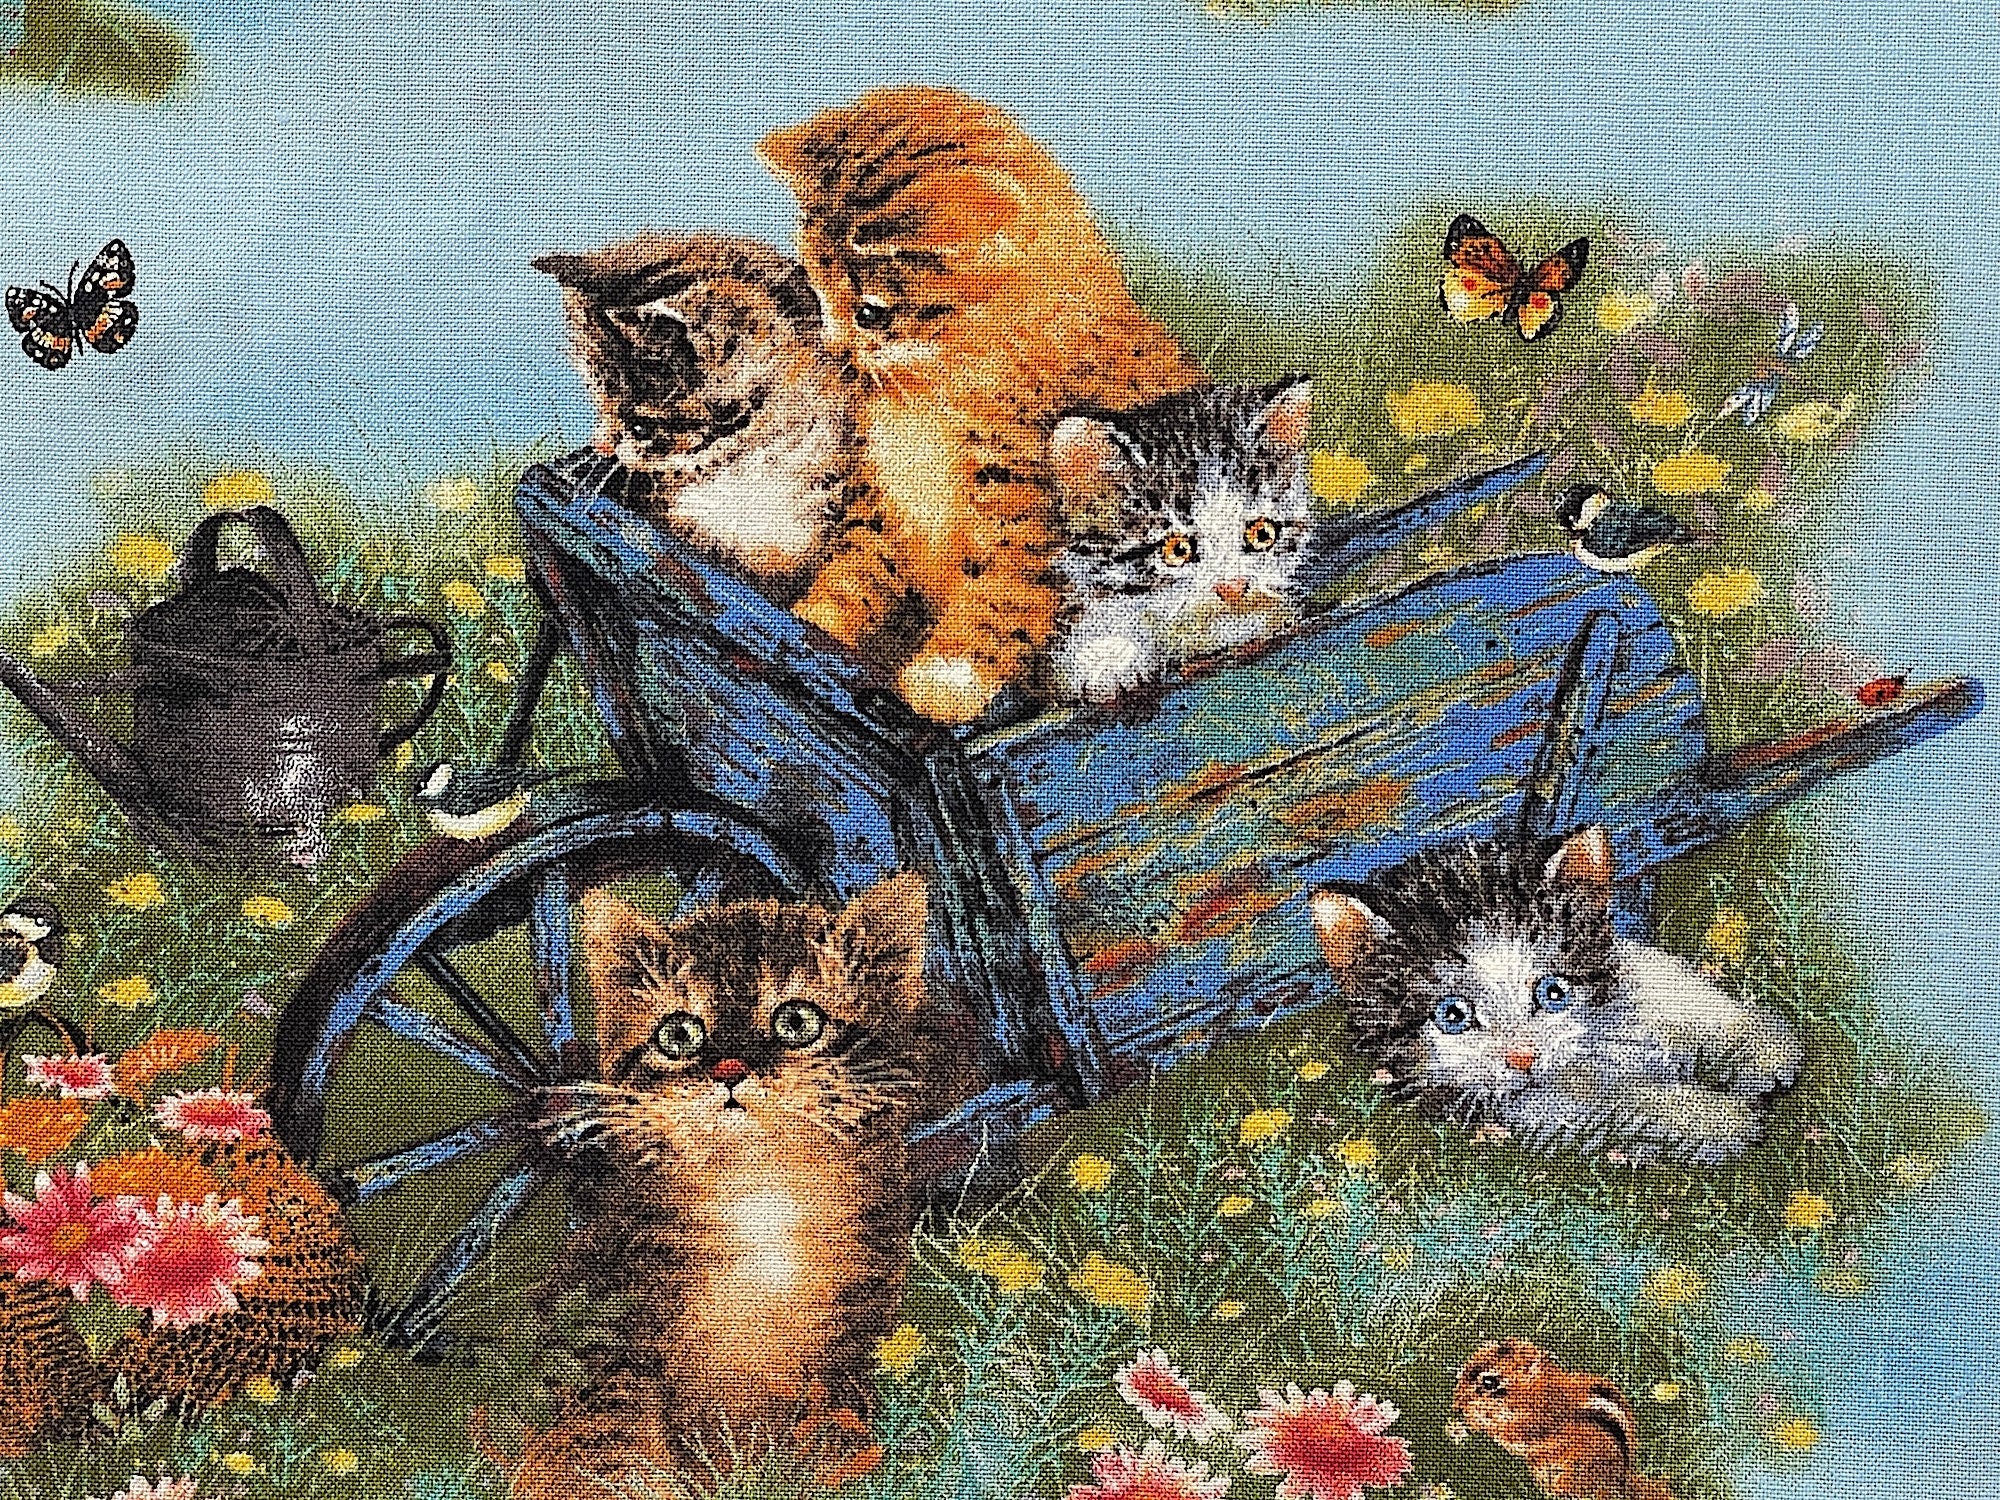 Close up of kittens in a wheelbarrow in a field.